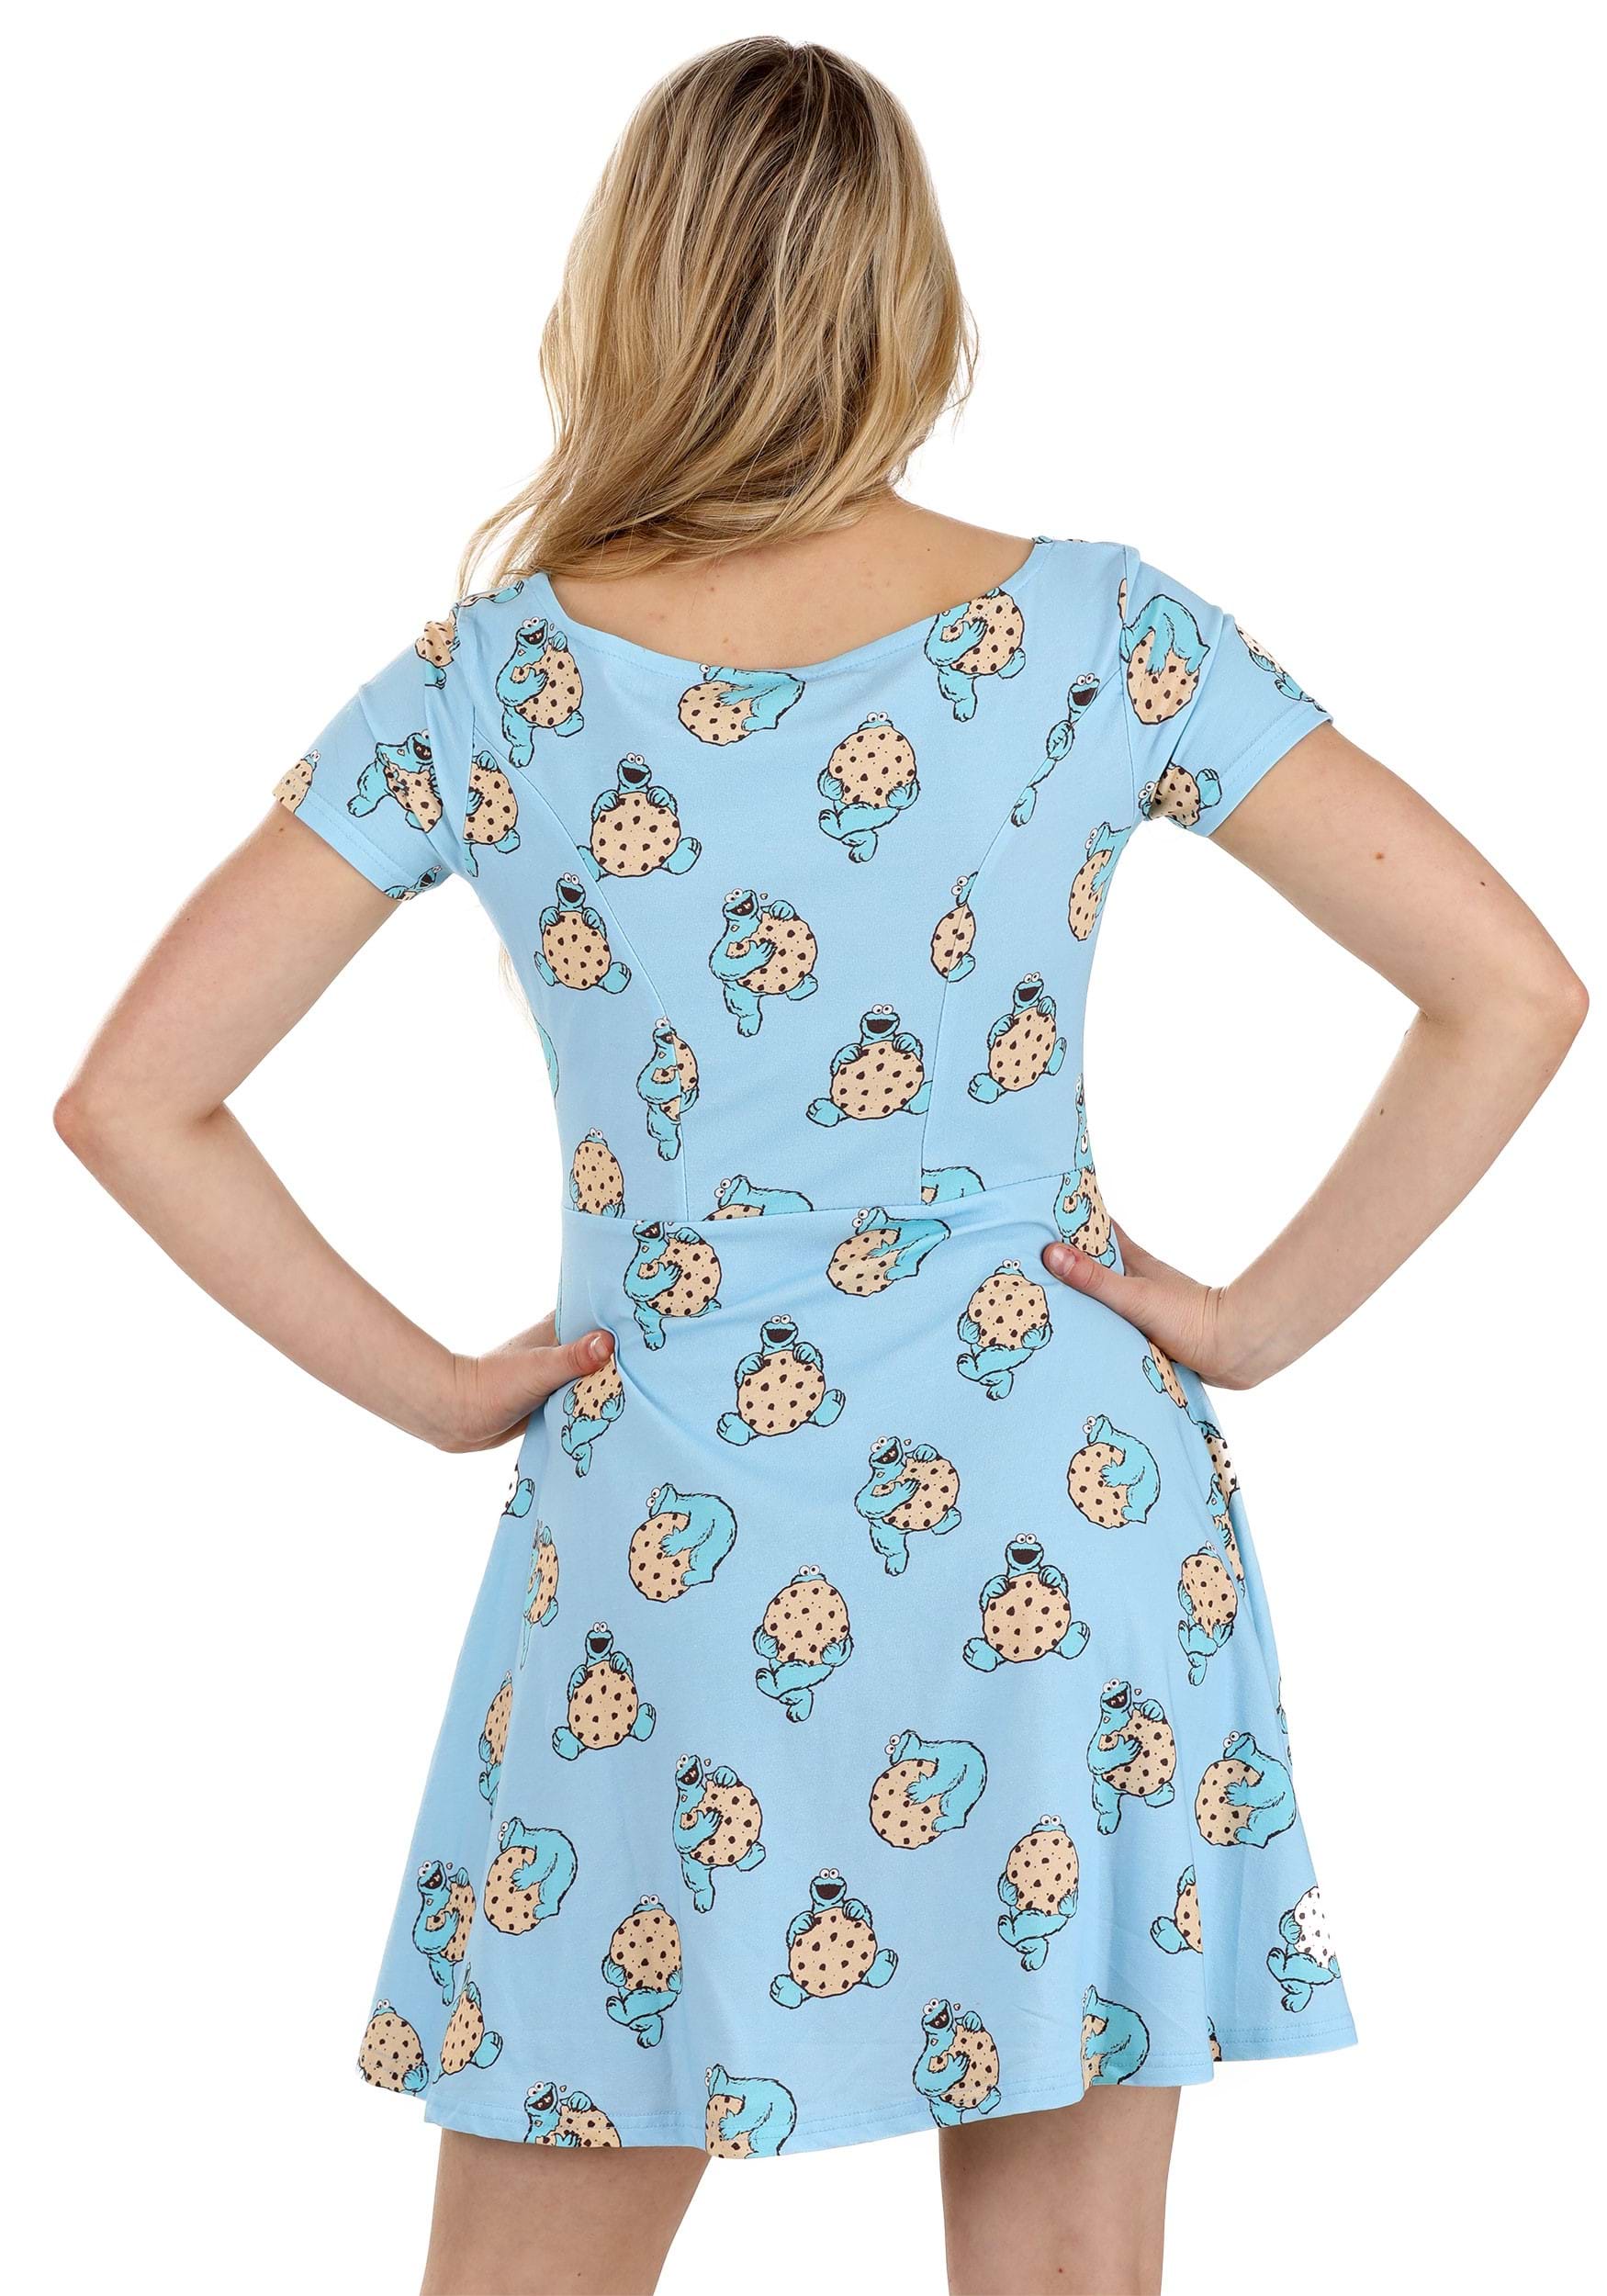 Cakeworthy Sesame Street Cookie Monster Women's Skater Dress